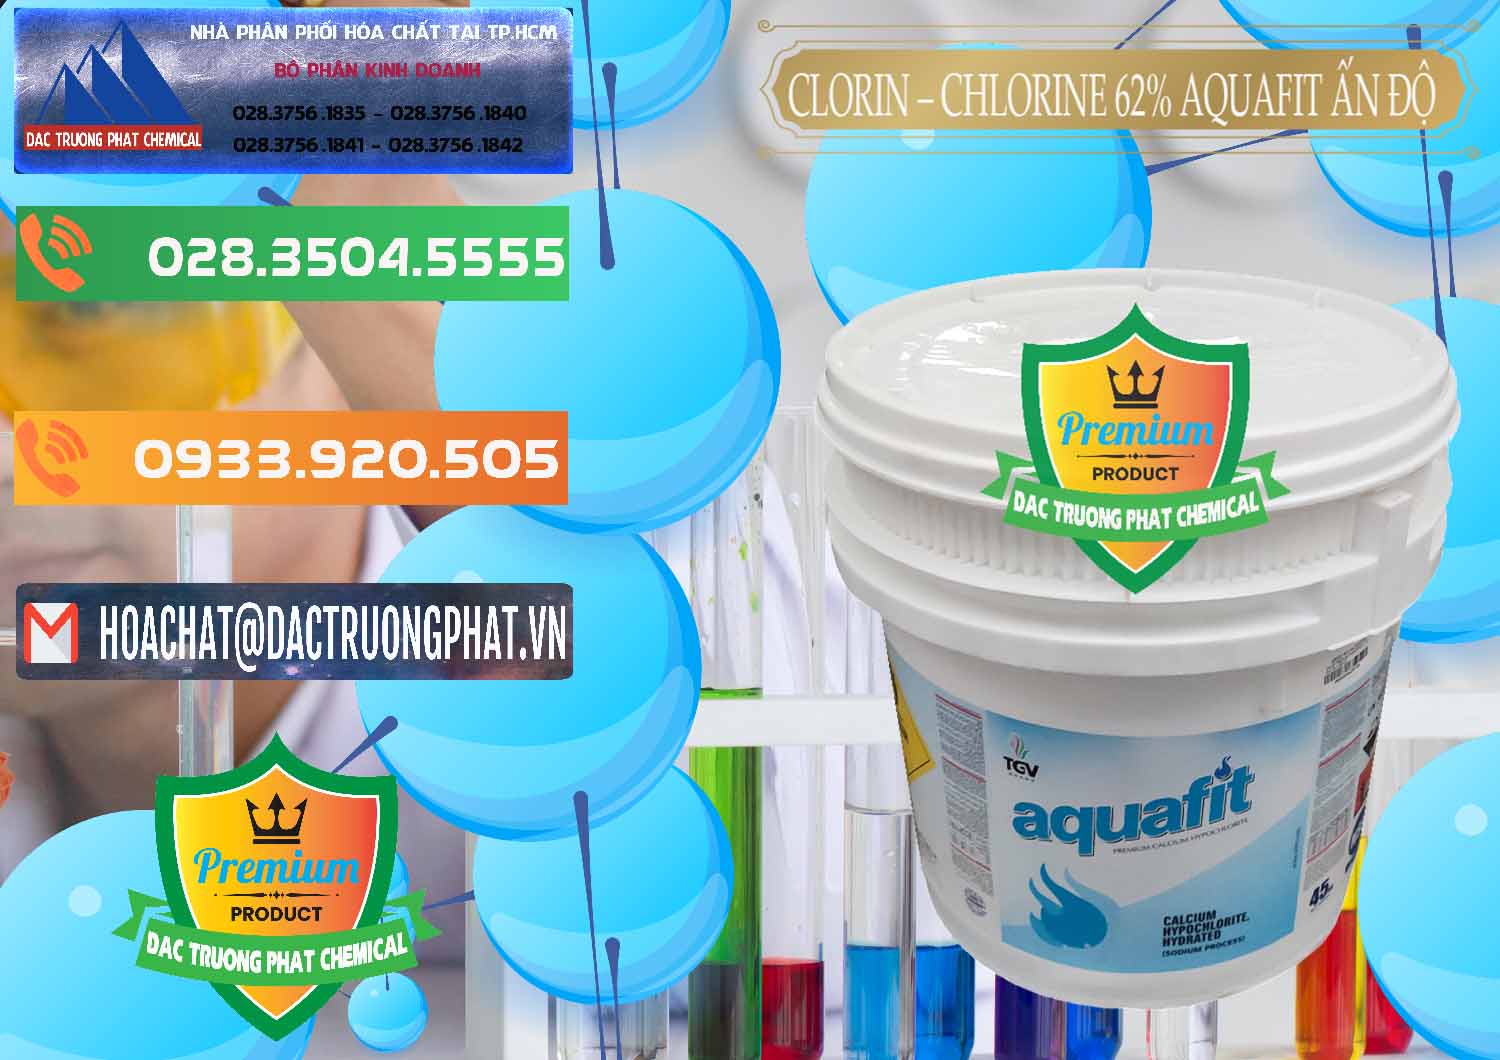 Cung cấp & bán Clorin - Chlorine 62% Aquafit Thùng Lùn Ấn Độ India - 0057 - Đơn vị chuyên nhập khẩu _ phân phối hóa chất tại TP.HCM - hoachatxulynuoc.com.vn